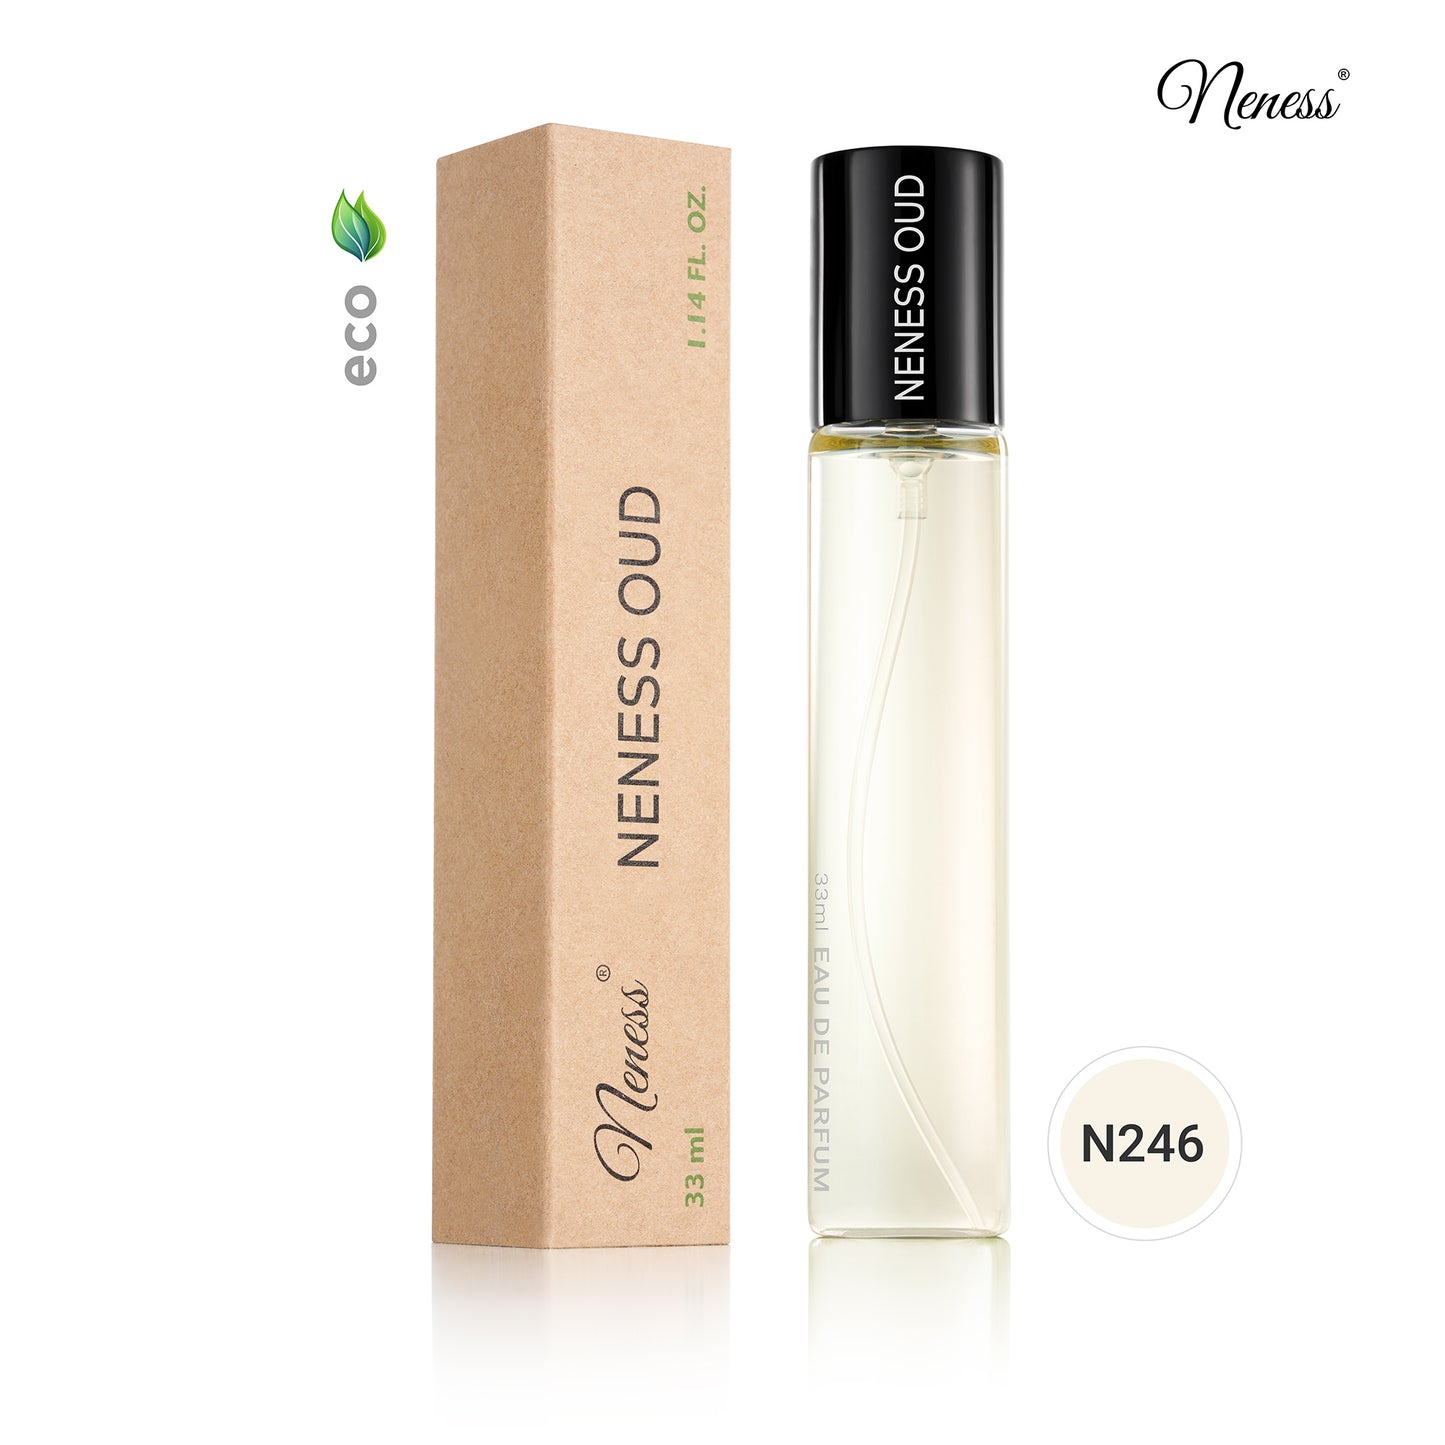 N246. Neness OUD - 33 ml - Unisex Perfumes